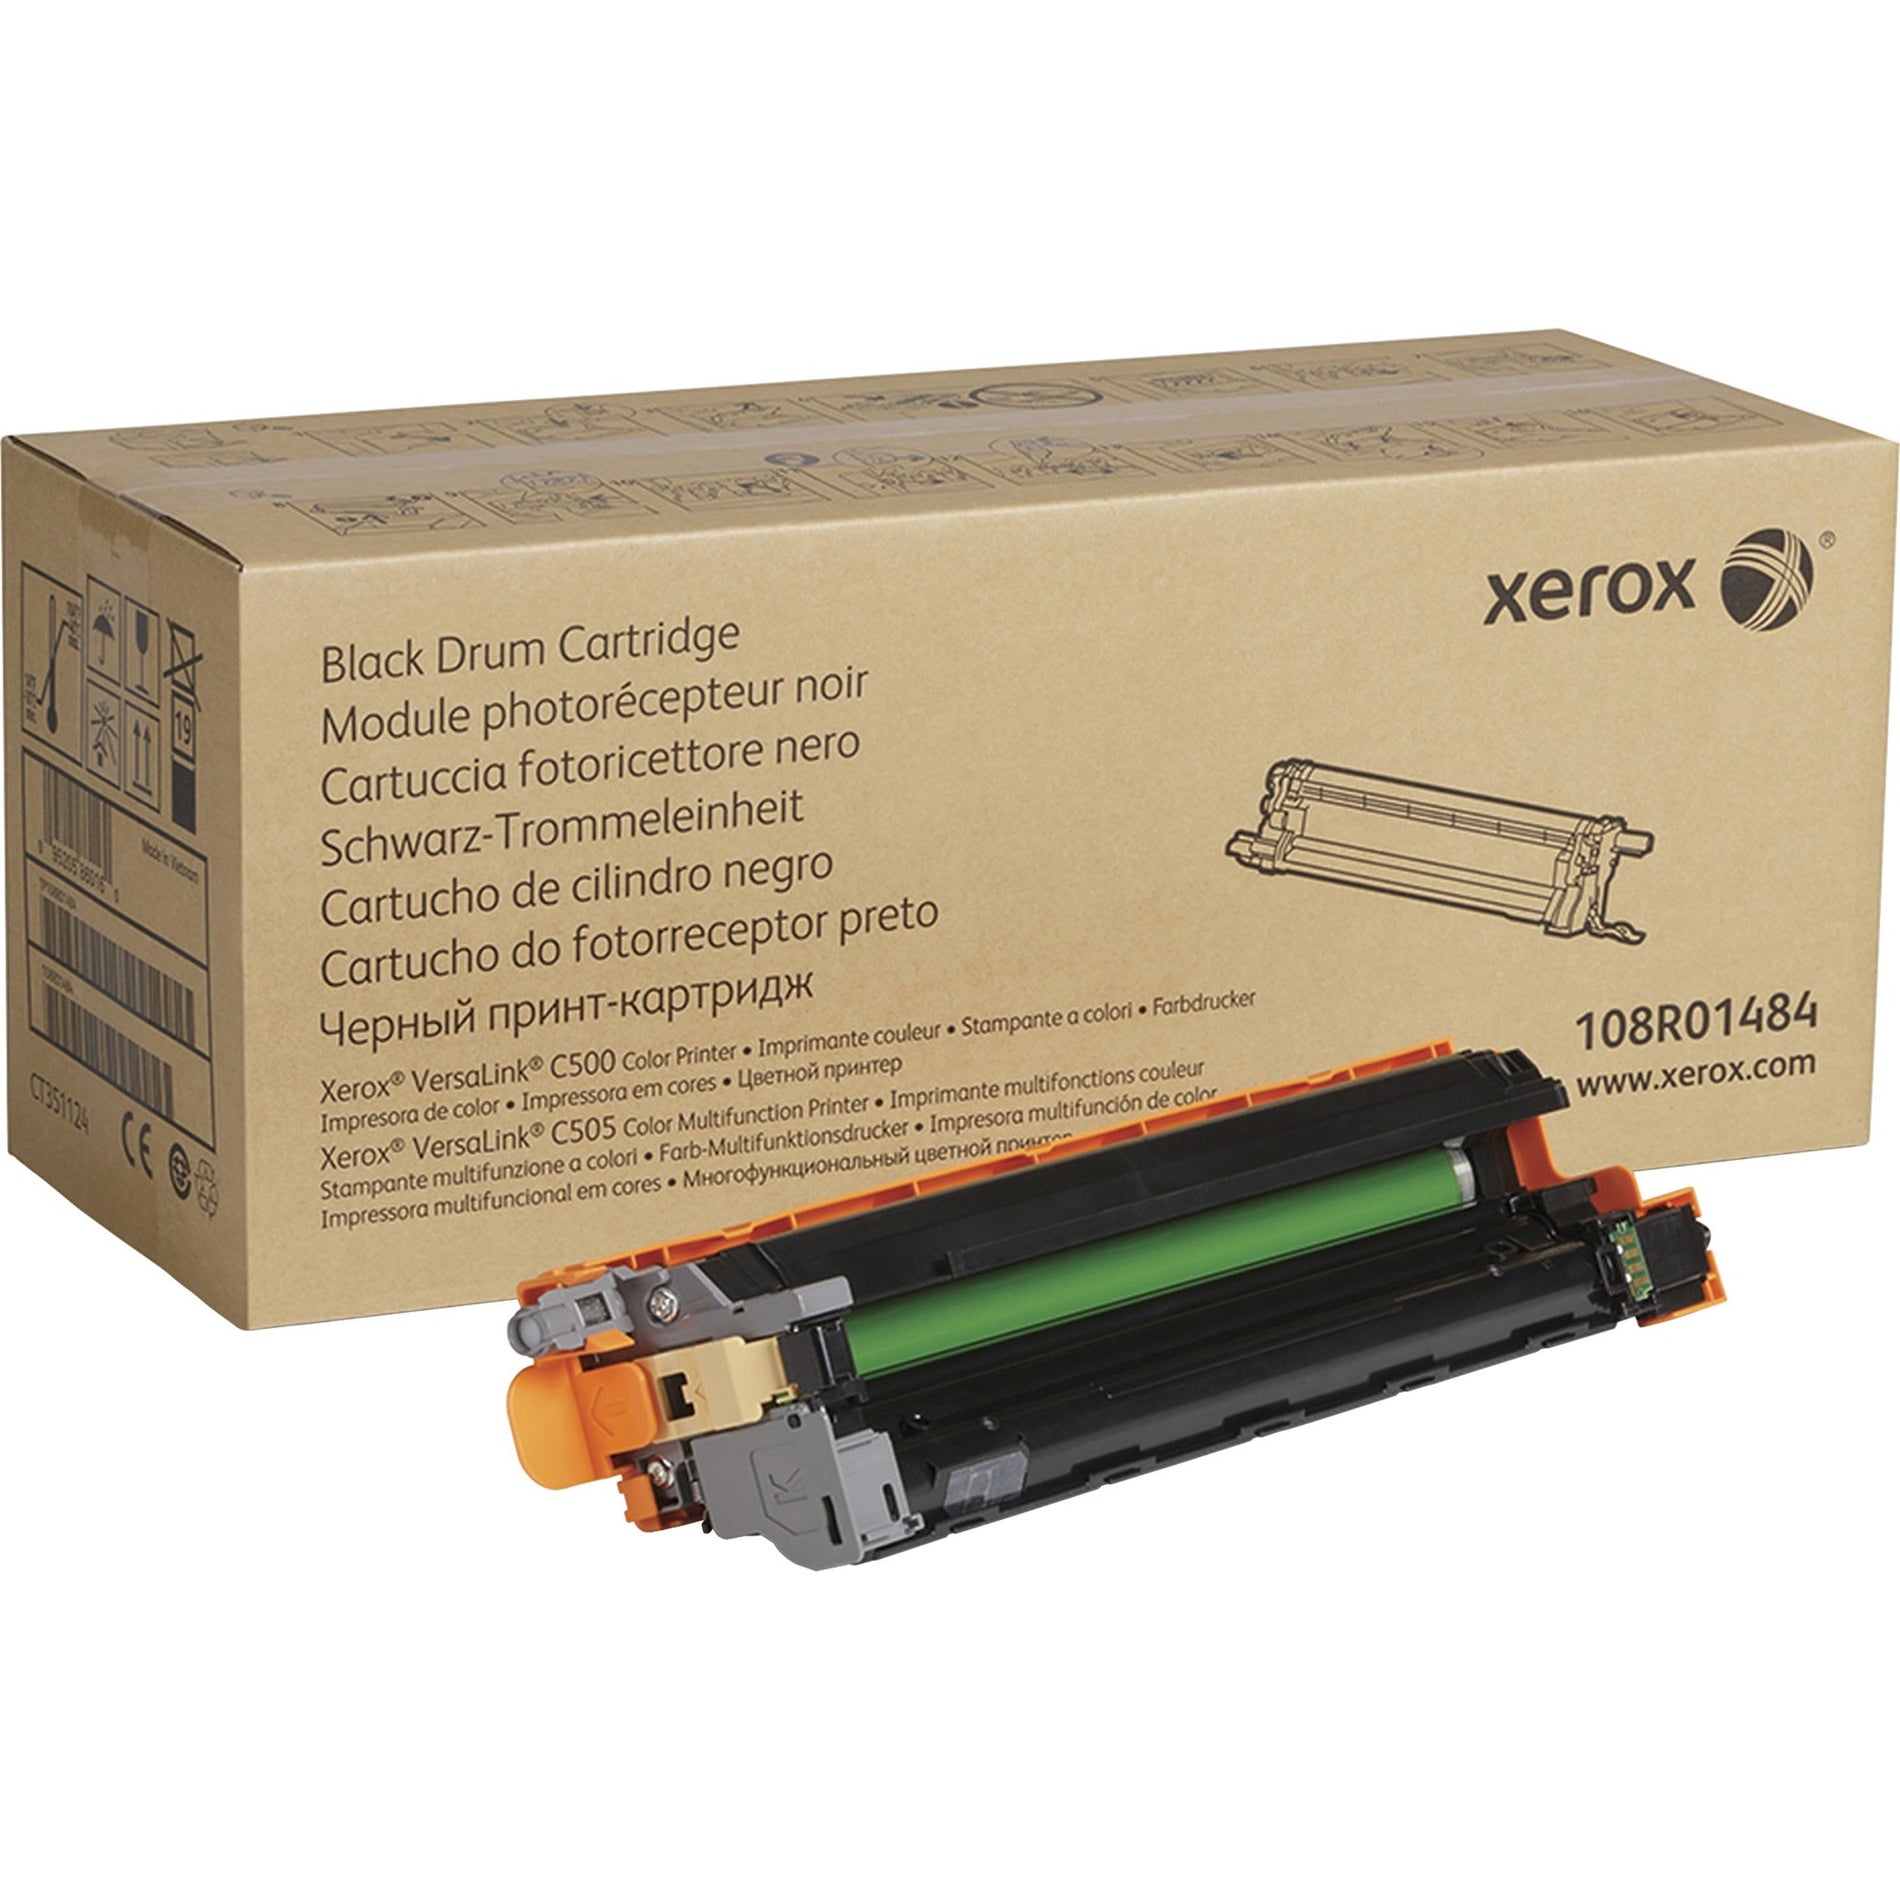 Xerox 108R01484 VersaLink C500/C505 Drum Cartridge, 40,000 Page Yield, Black